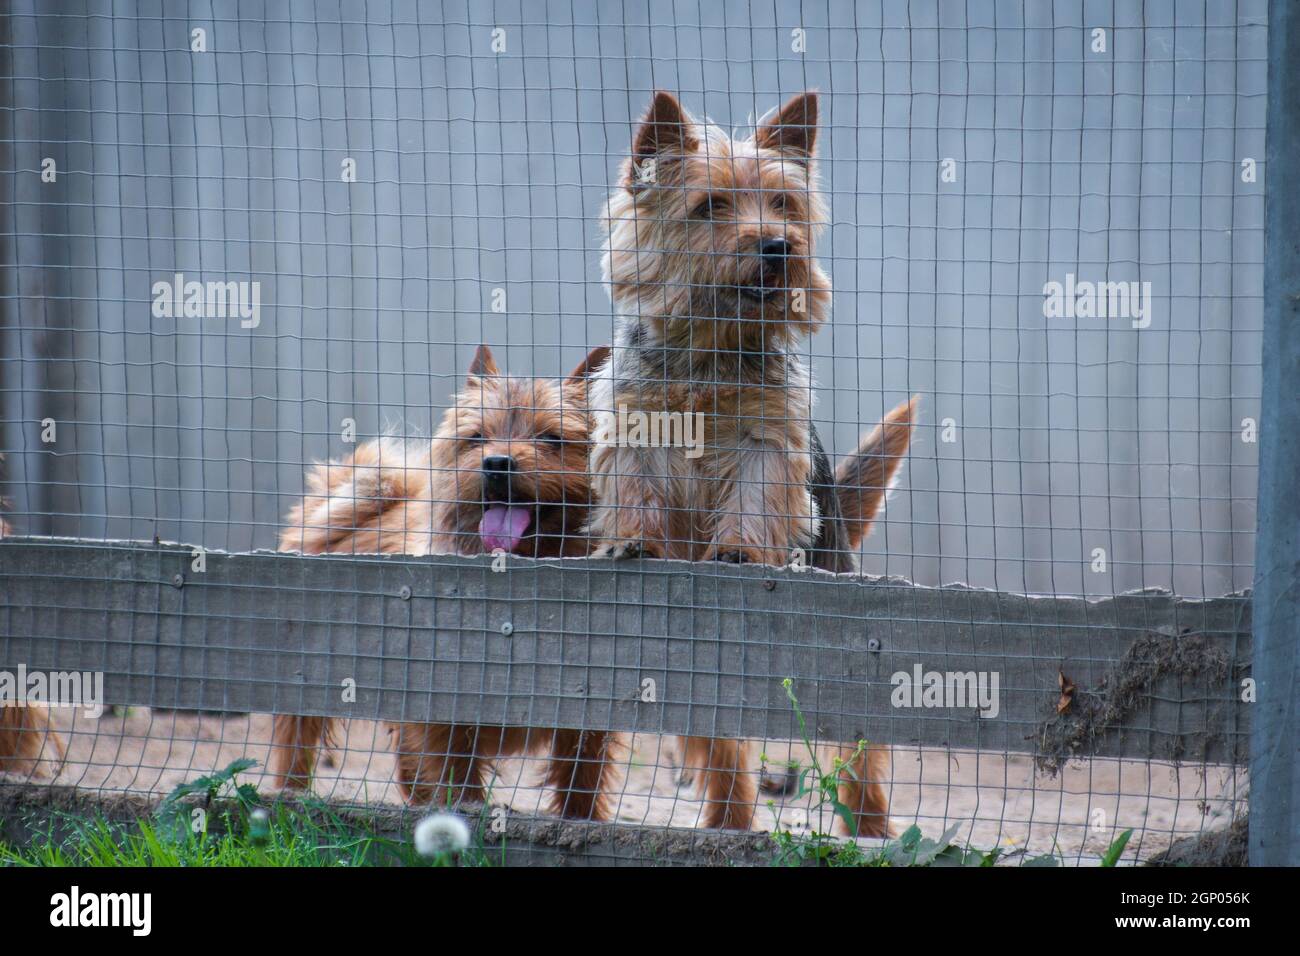 Zwei rothaarige Hunde der Rasse Norwich Terrier gucken heraus Des Gehäuses  im Freien Stockfotografie - Alamy